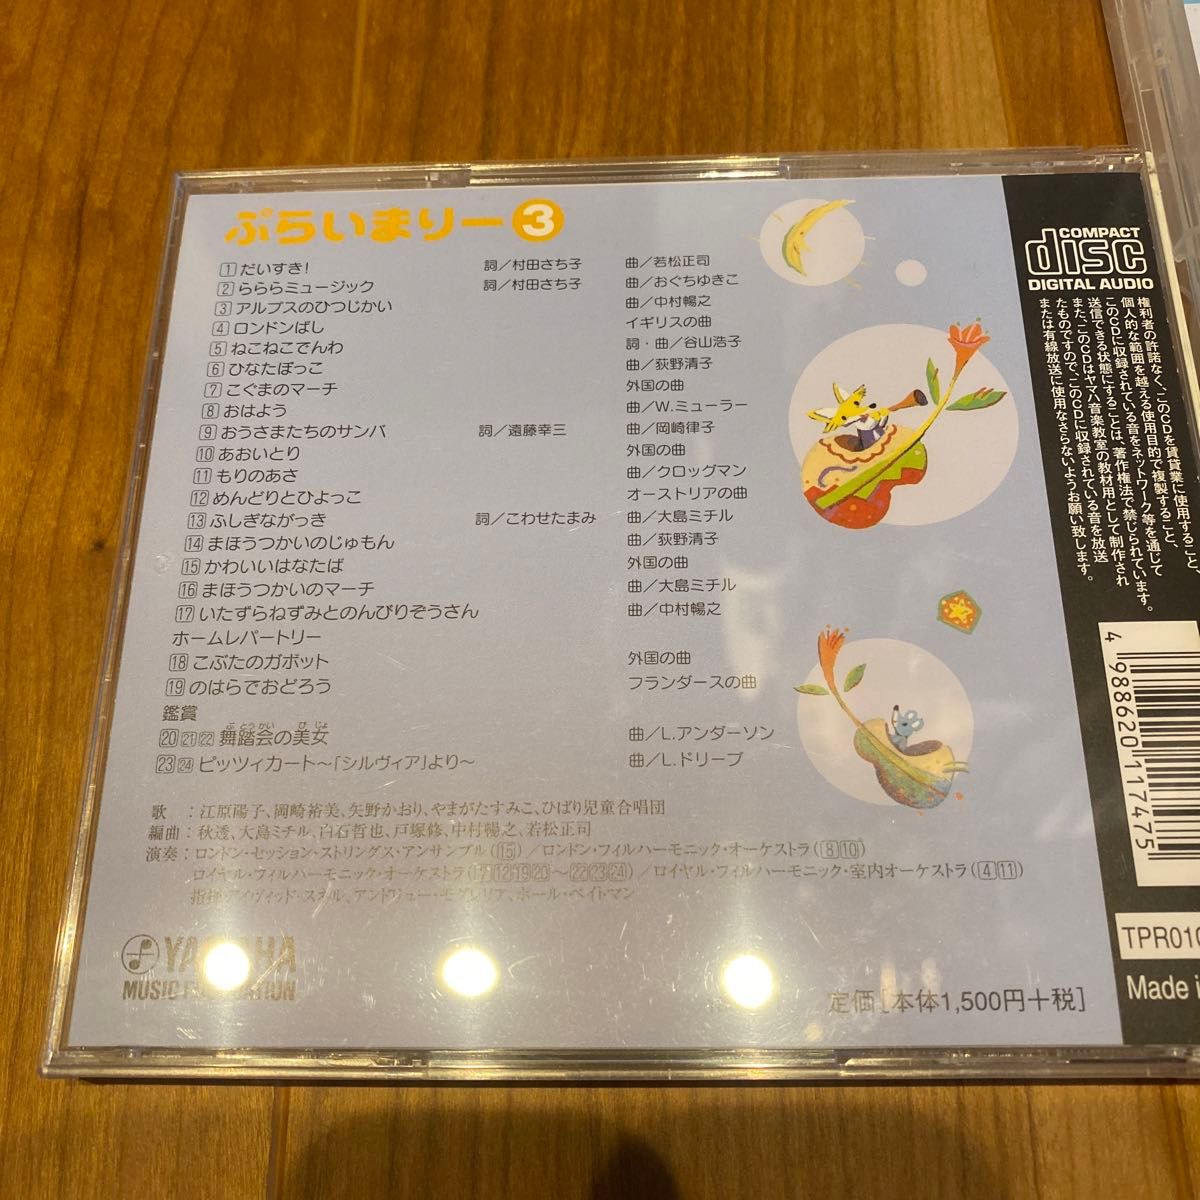 ぷらいまりー3 CD DVD